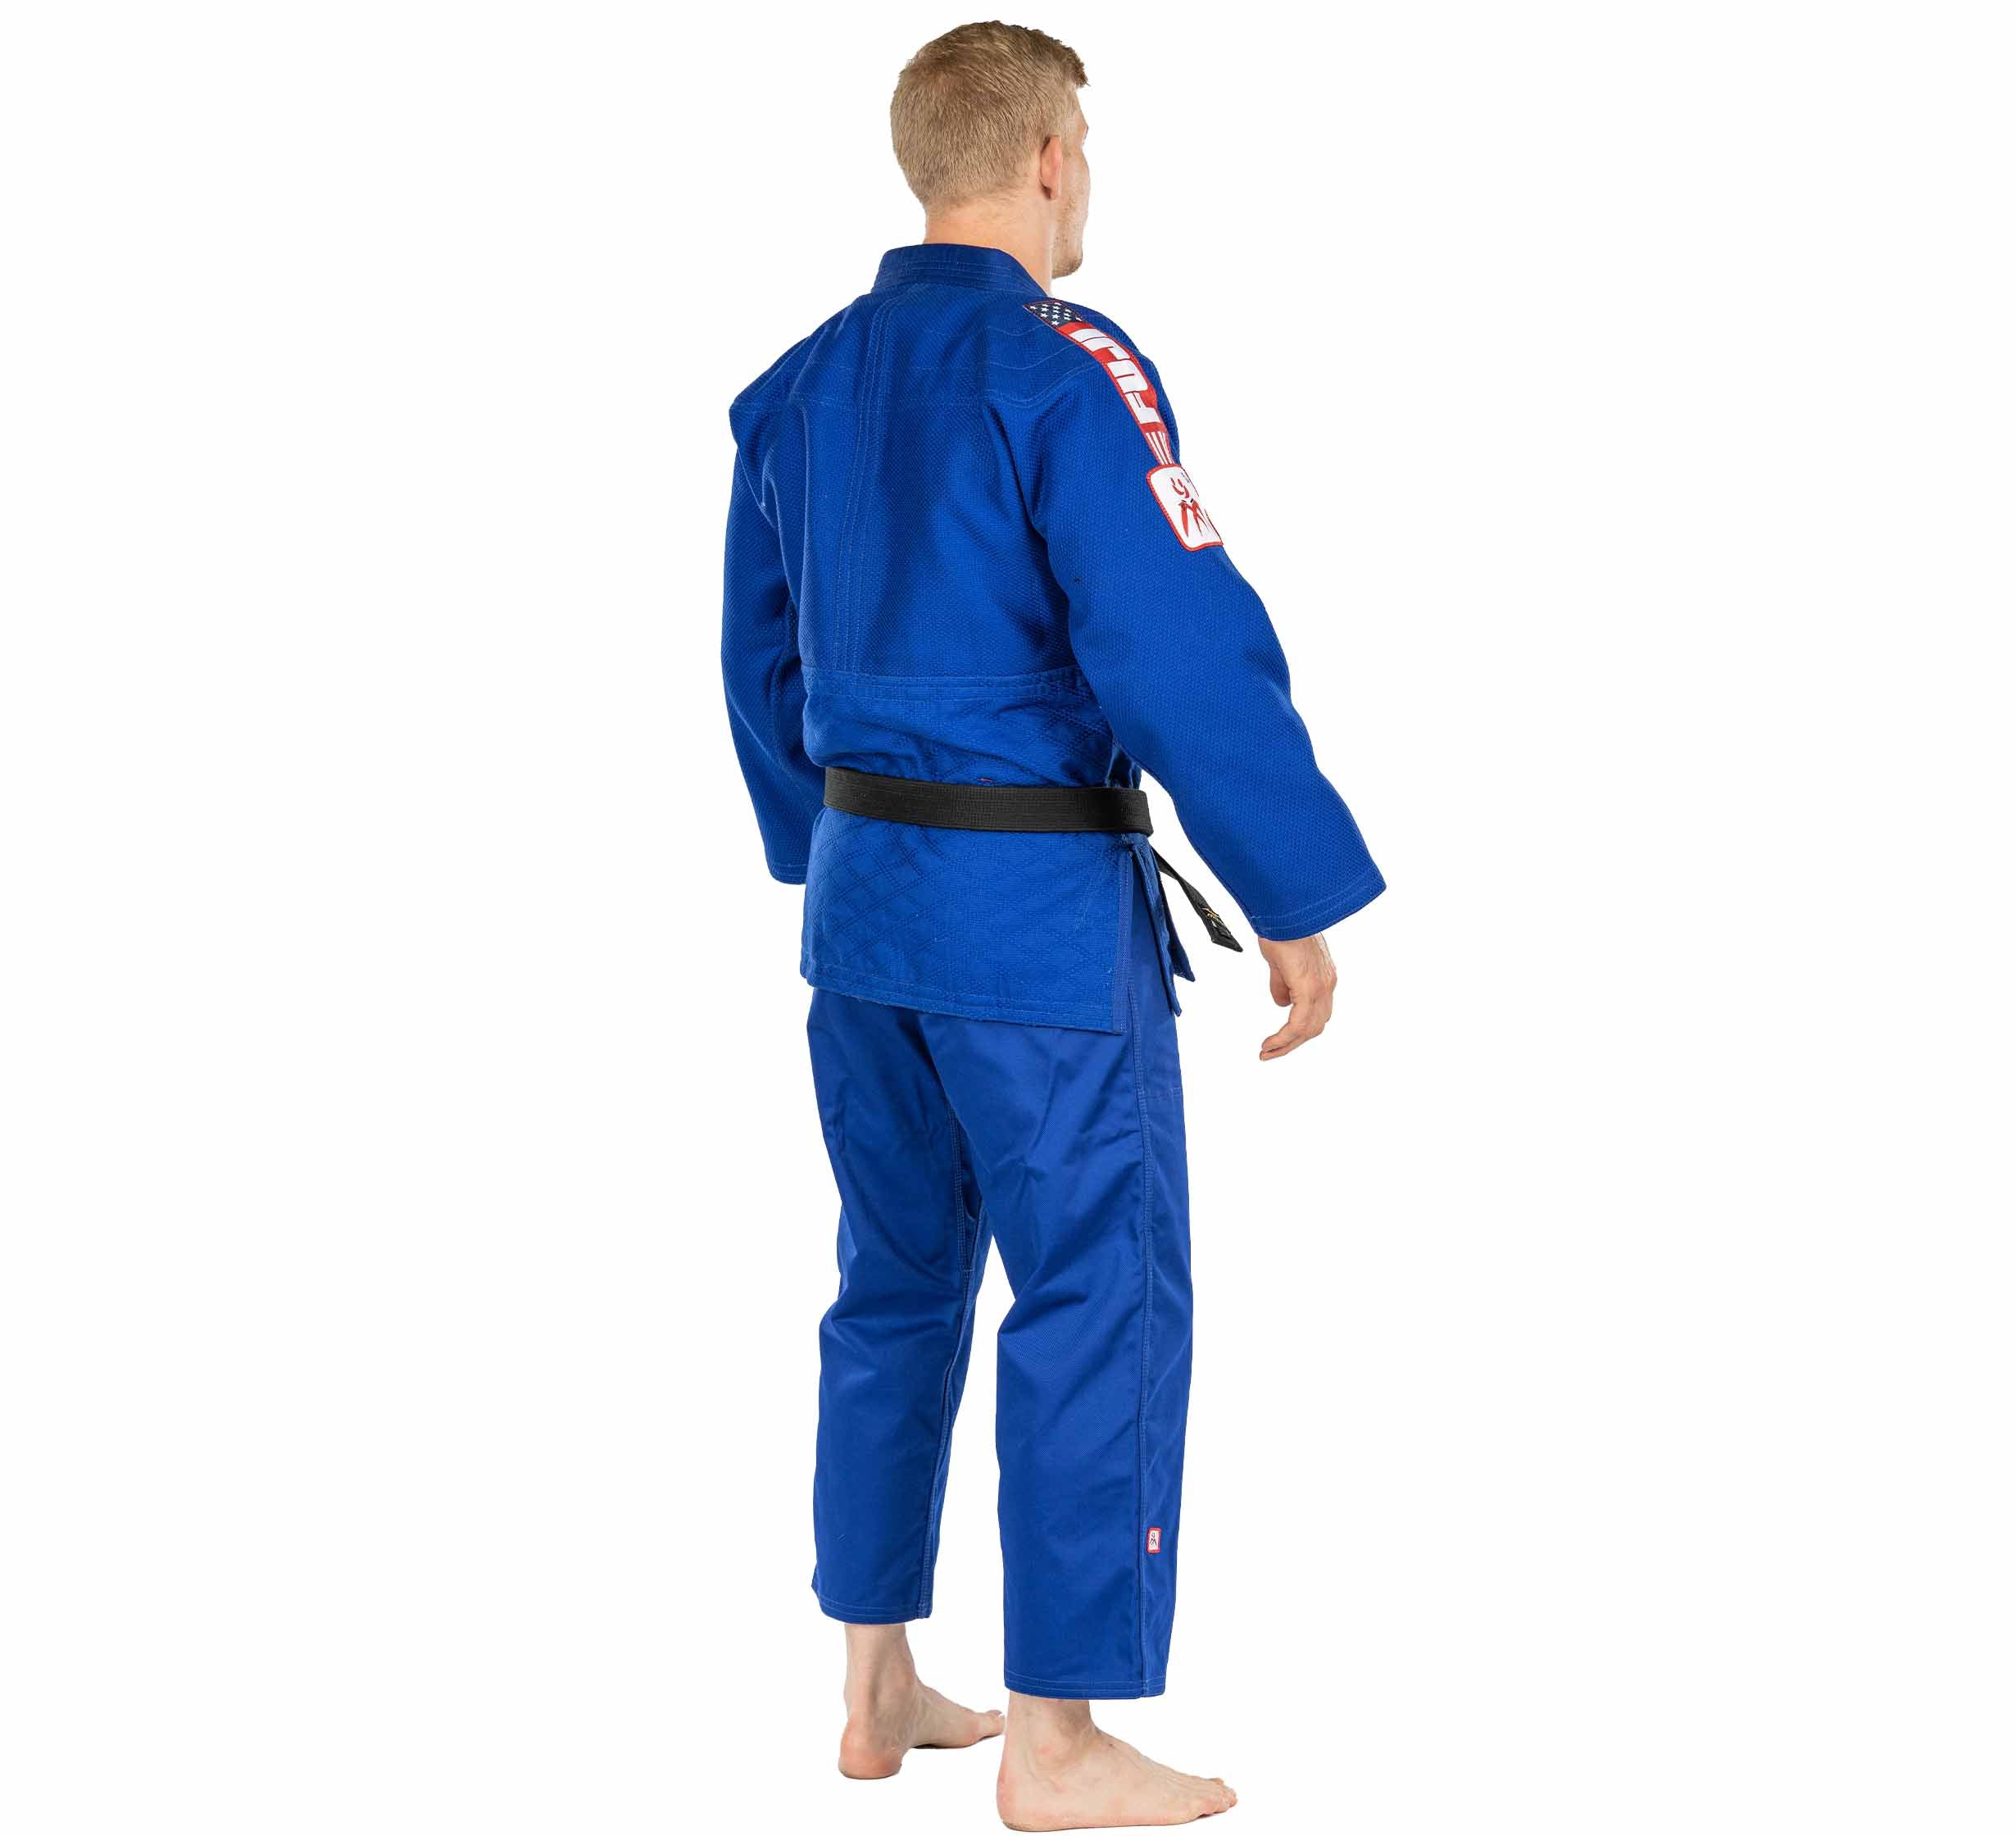 USA Judo Single Weave Gi 2.0 Blue